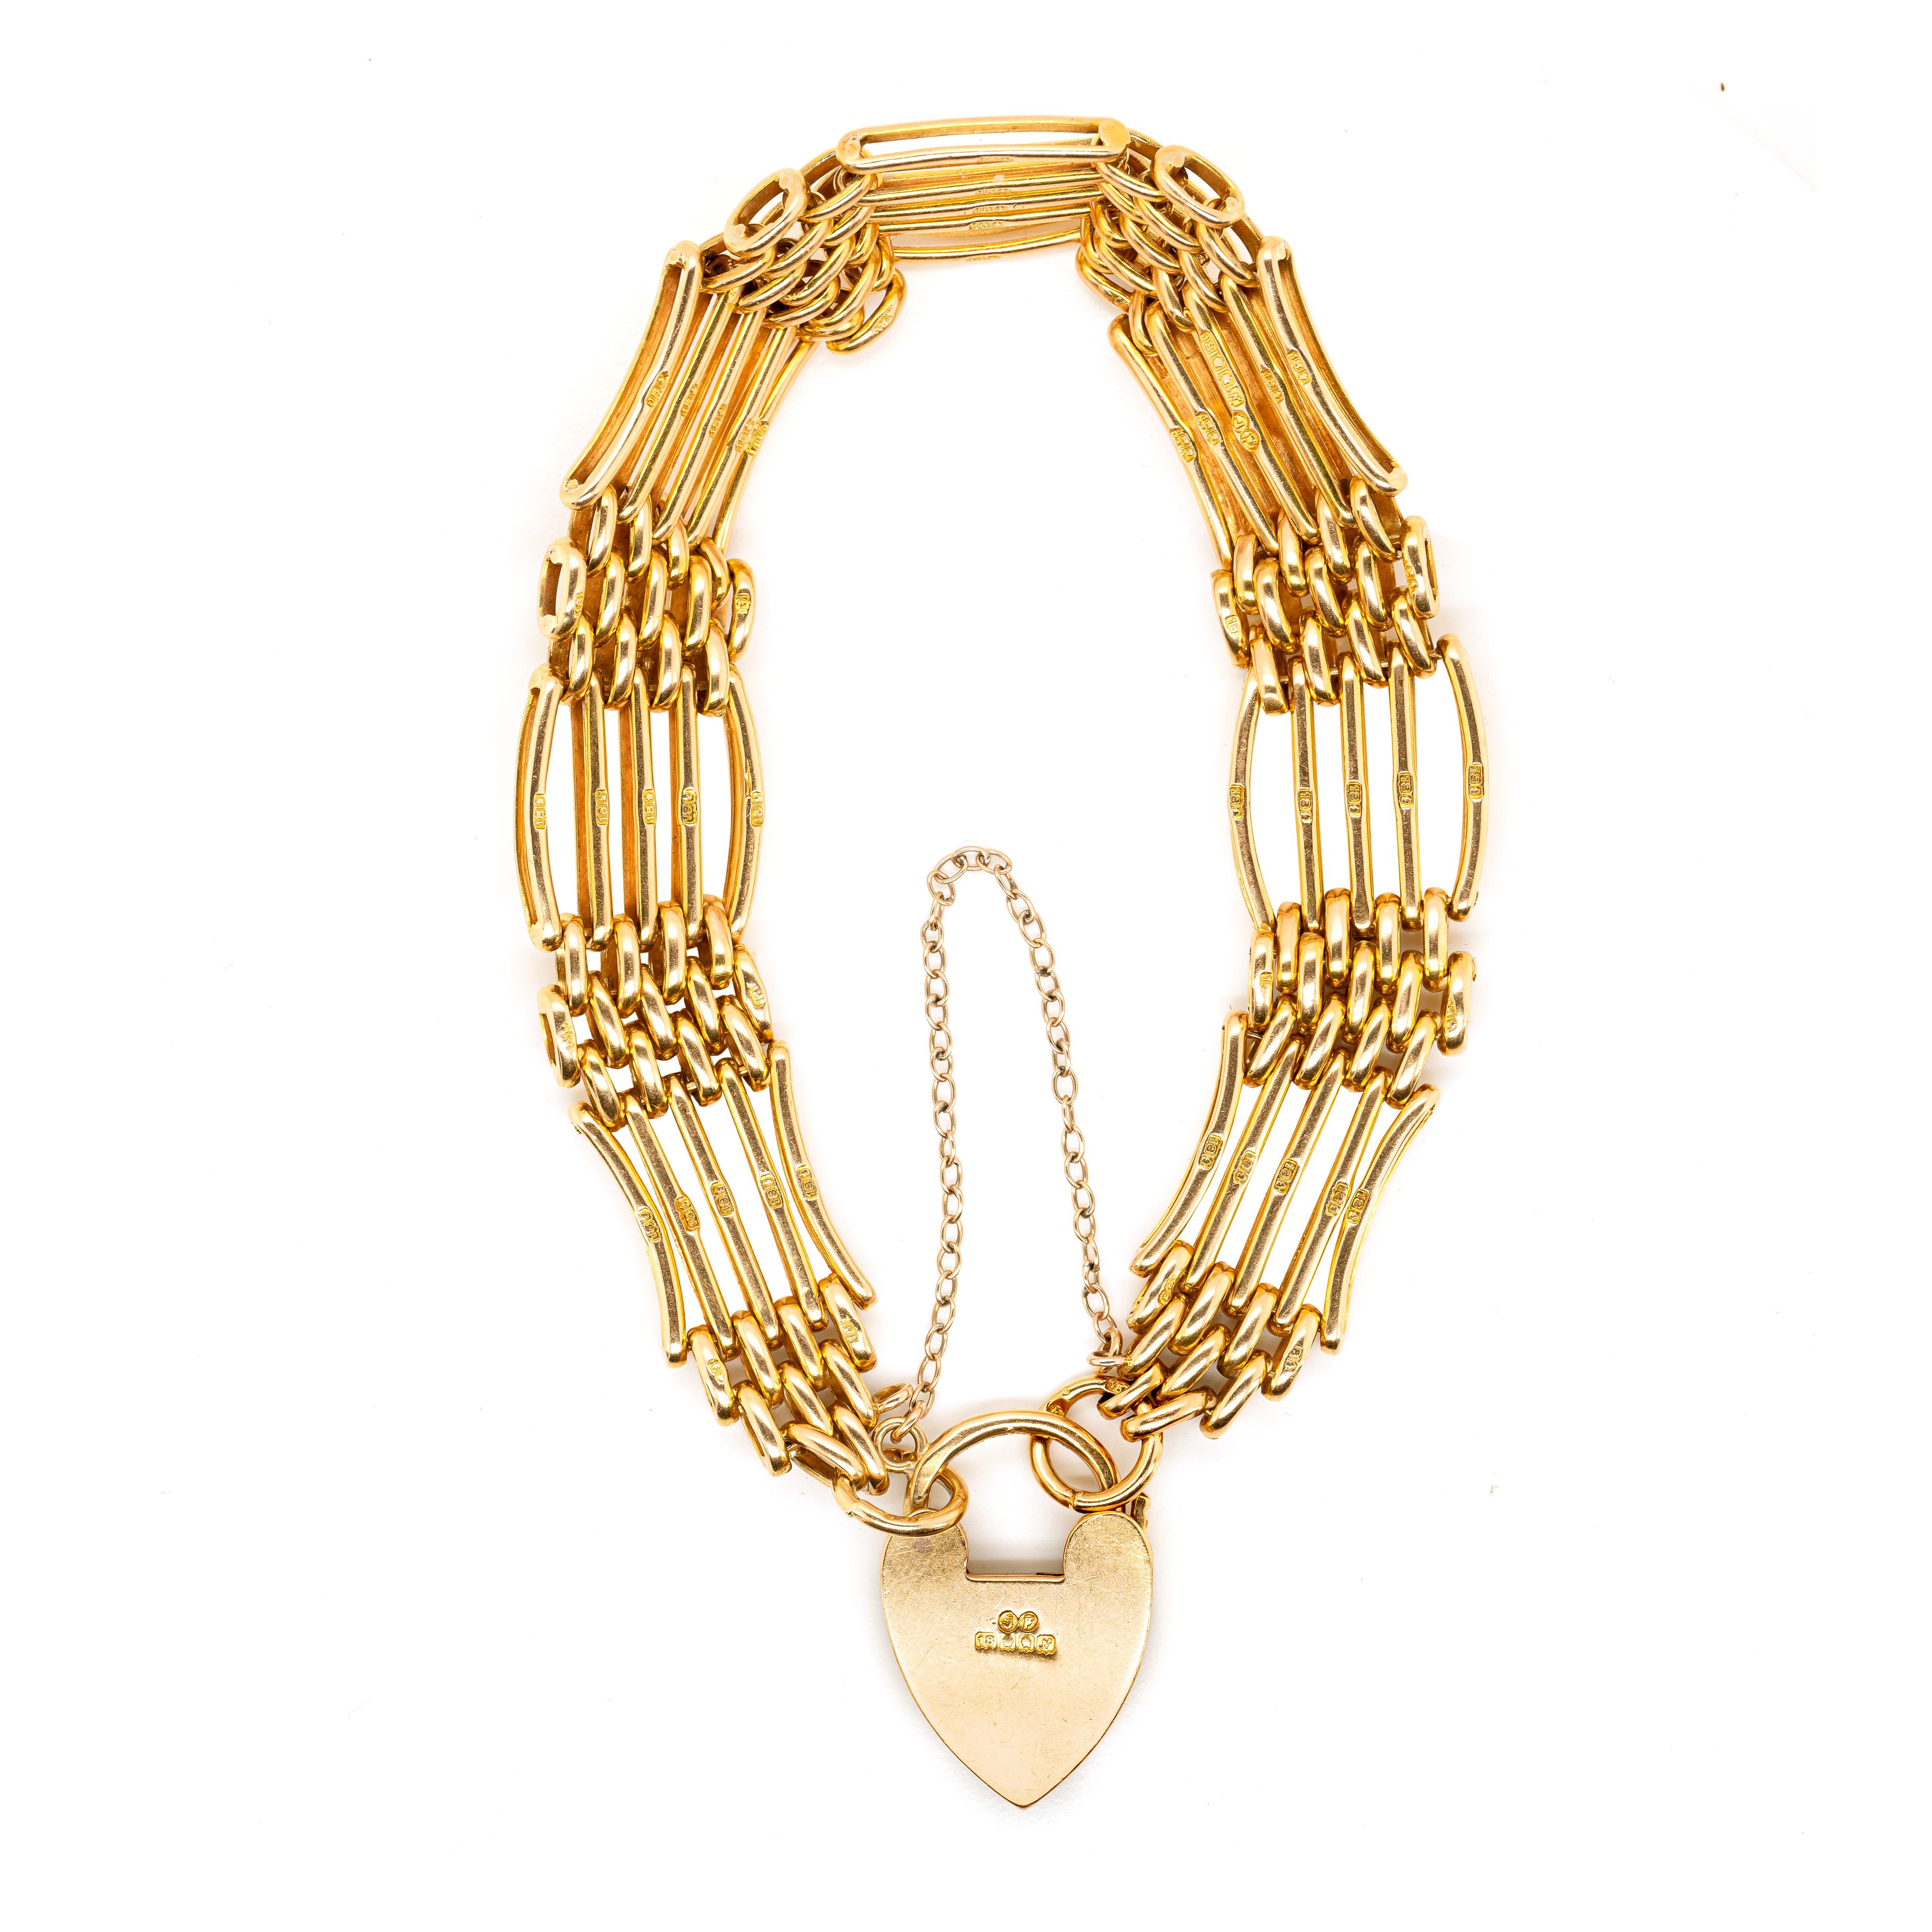 Datant de 1913, ce bracelet de porte édouardien est méticuleusement fabriqué à la main en or jaune 18 carats et se ferme avec un charmant cadenas en forme de cœur qui donne à cette pièce un aspect romantique. Le 